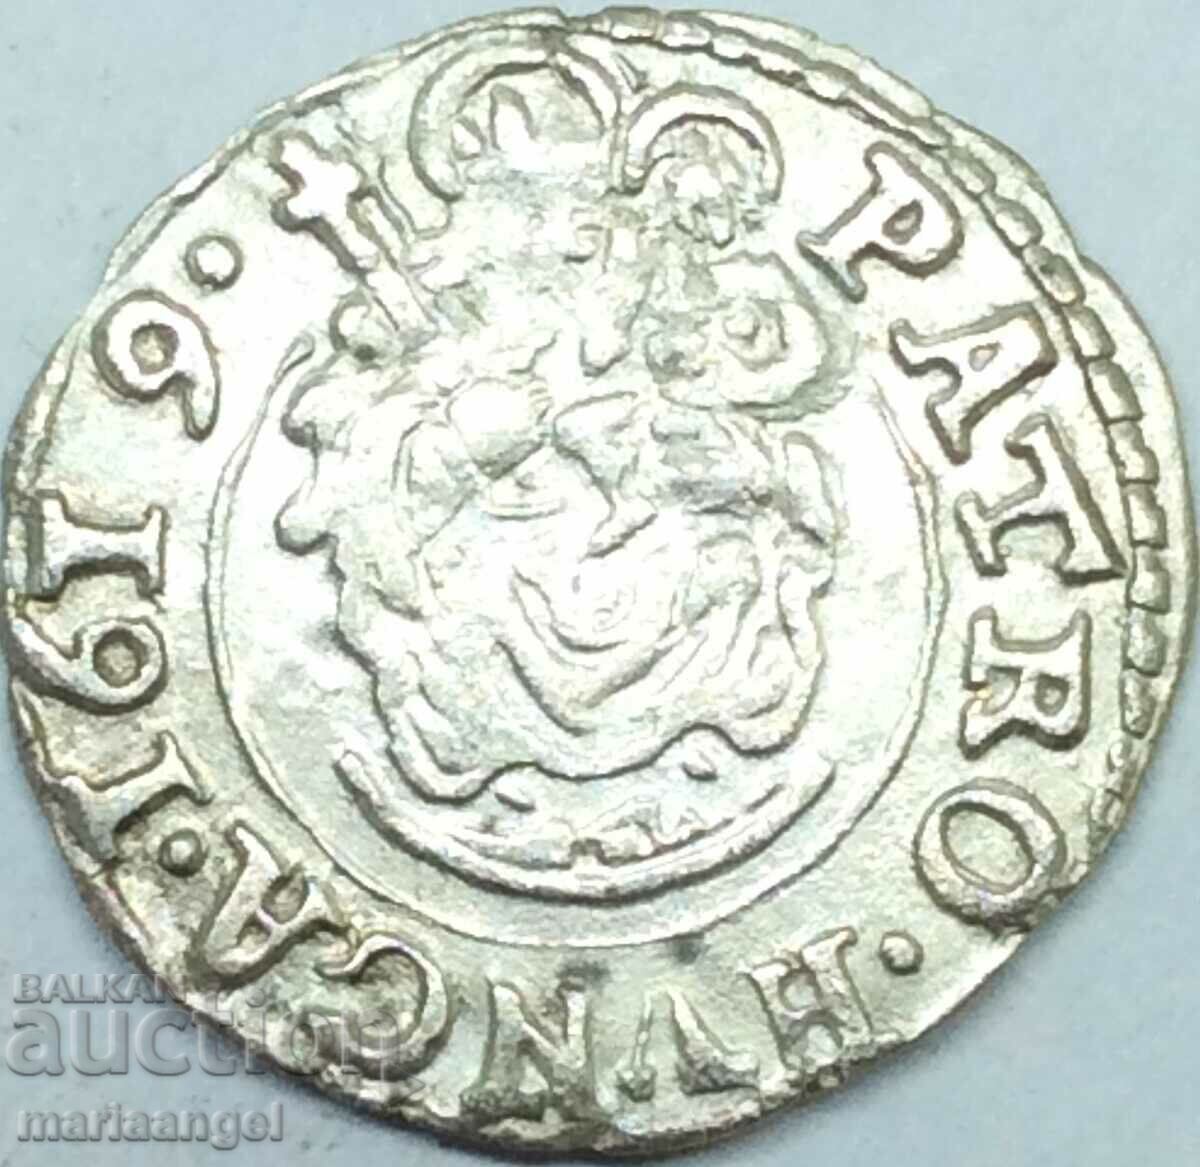 Ungaria 1 denar Matia II Madona argint maghiar